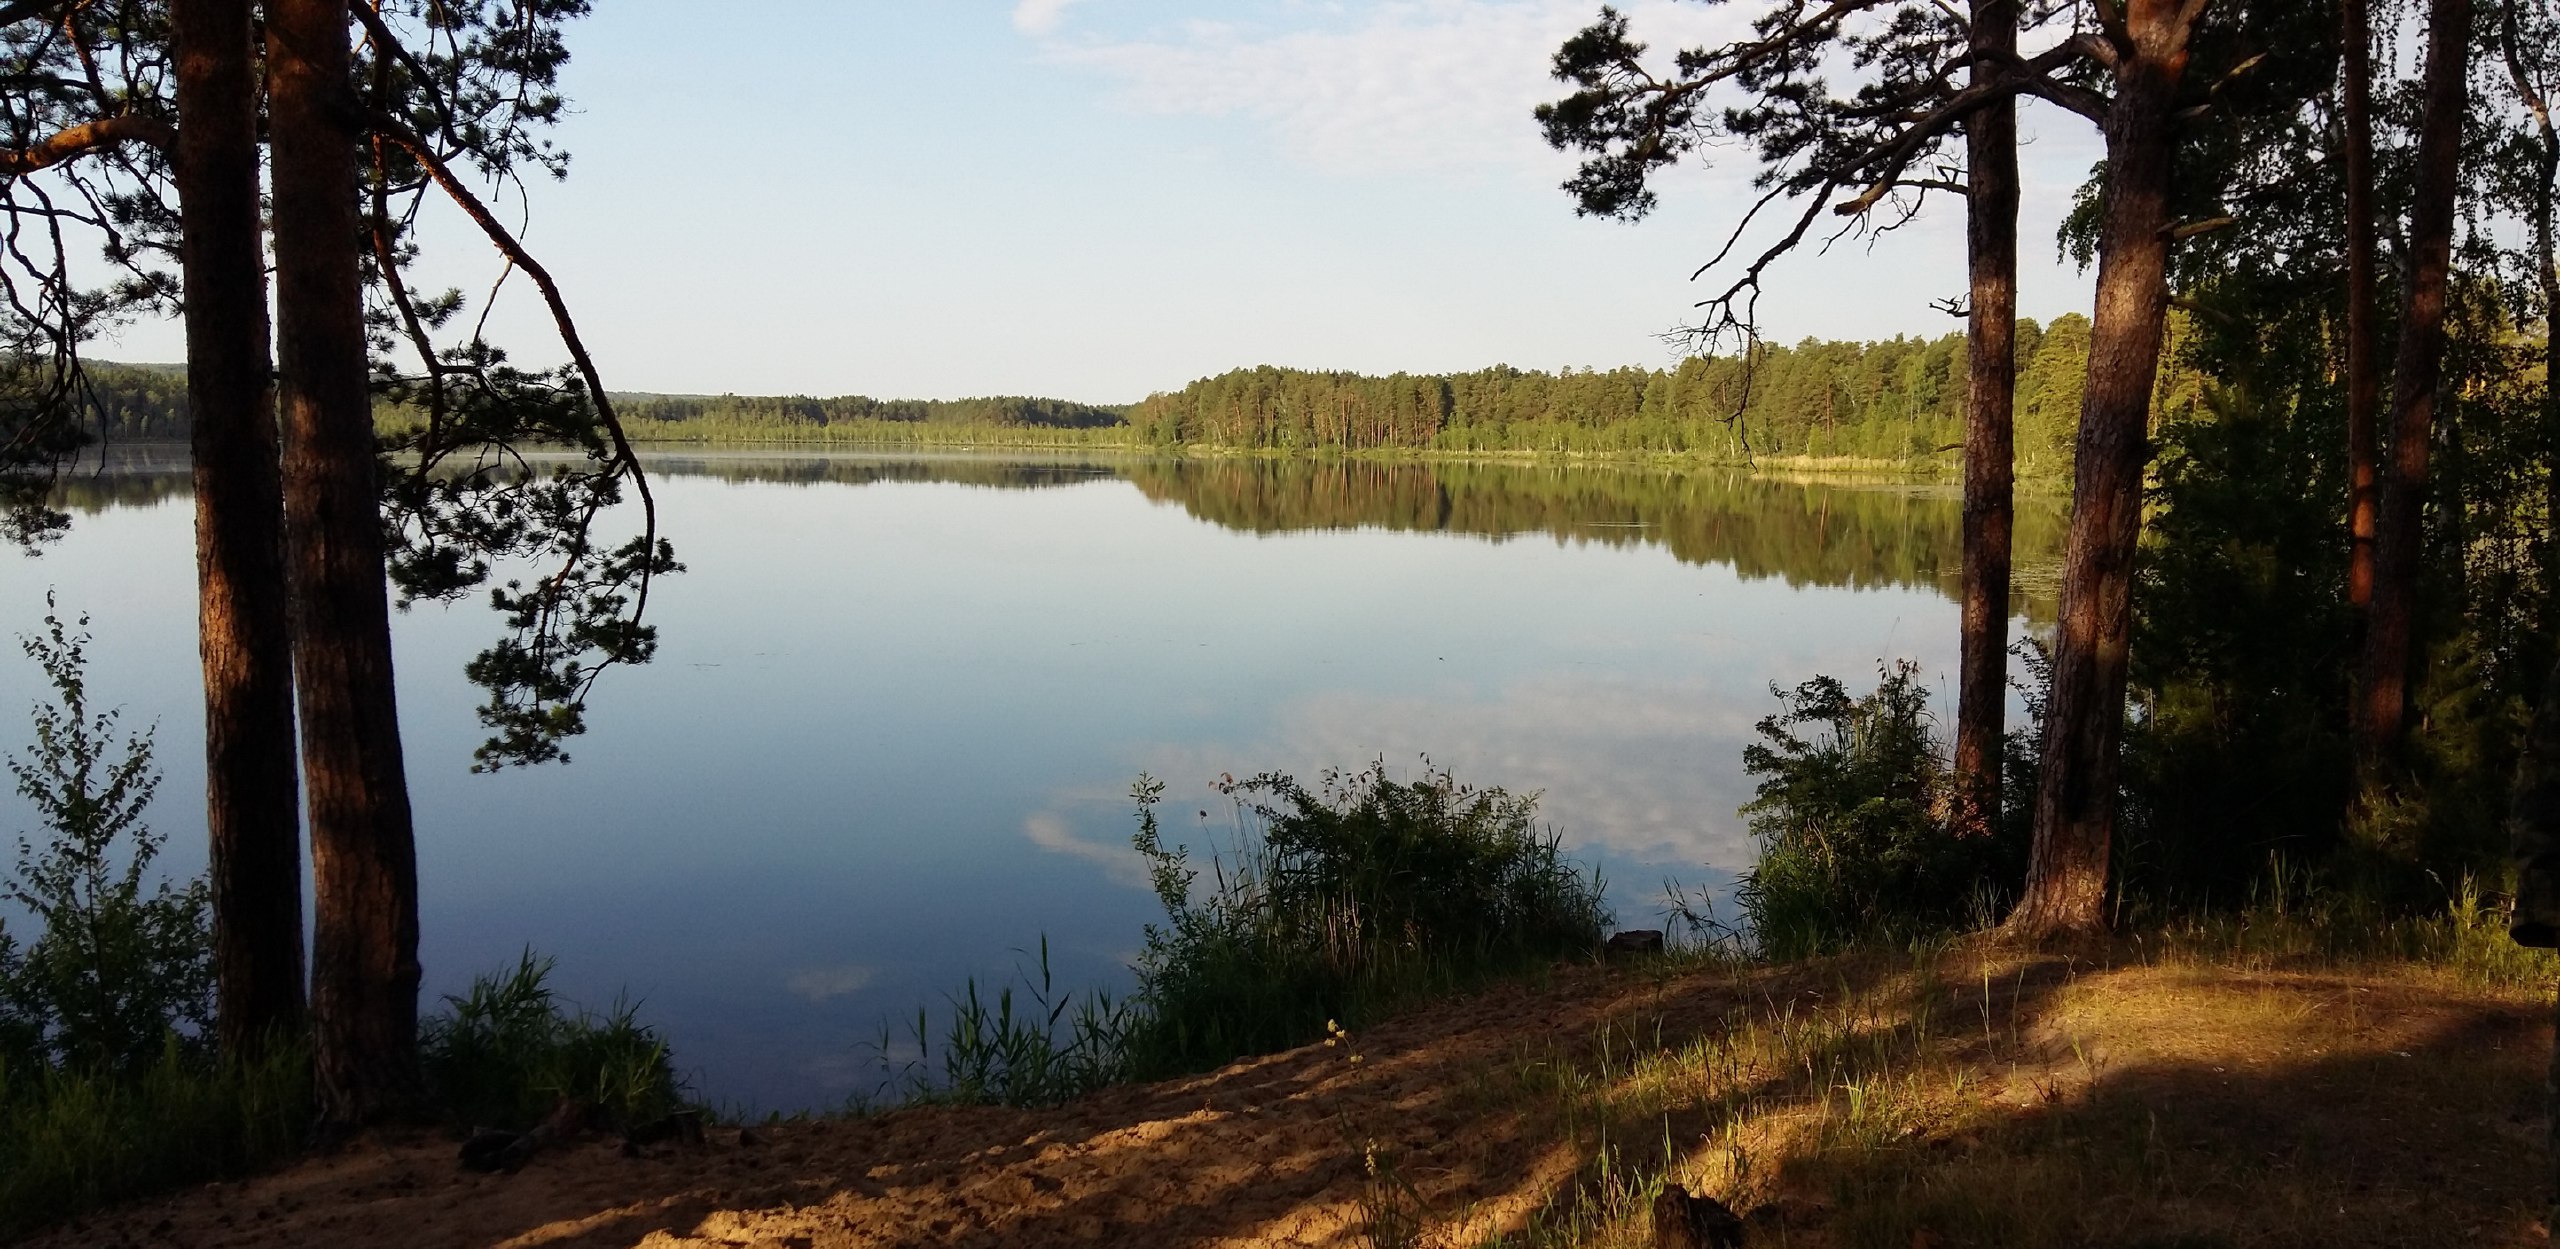 Фото: озеро Мундштучное, Туристский портал ТО